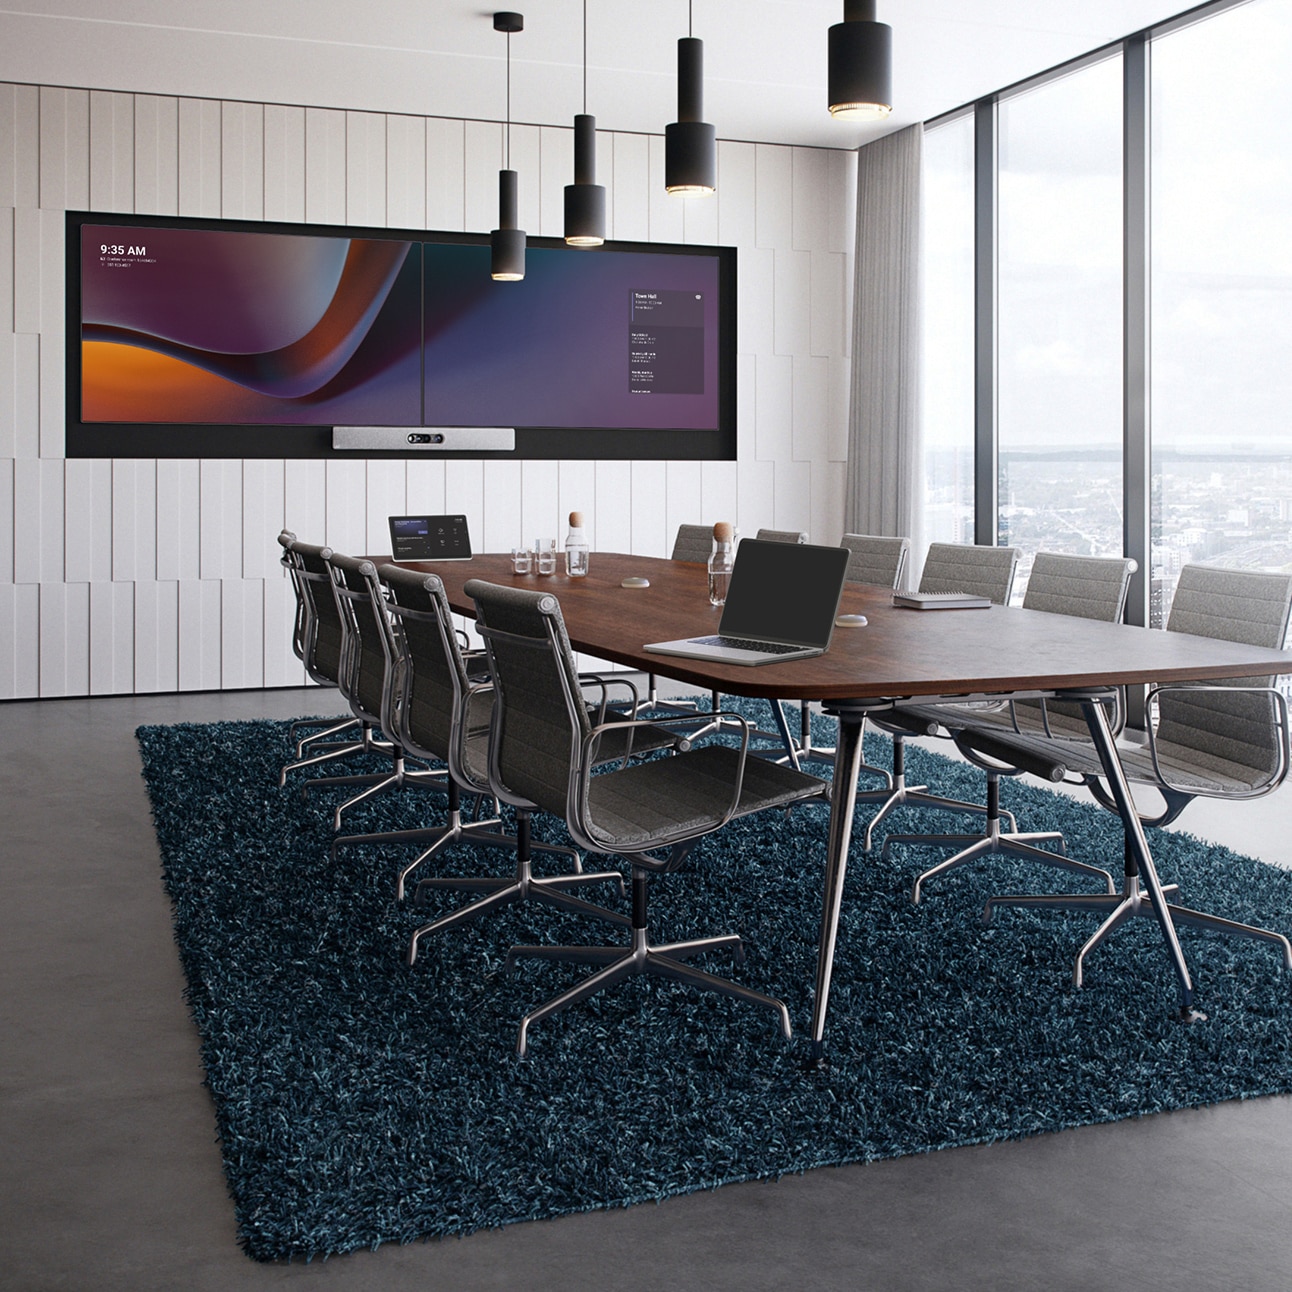 2 台のディスプレイ（Microsoft Teams の UI を表示）に設えた Cisco Room Kit Pro を壁に取り付けている広い会議室。